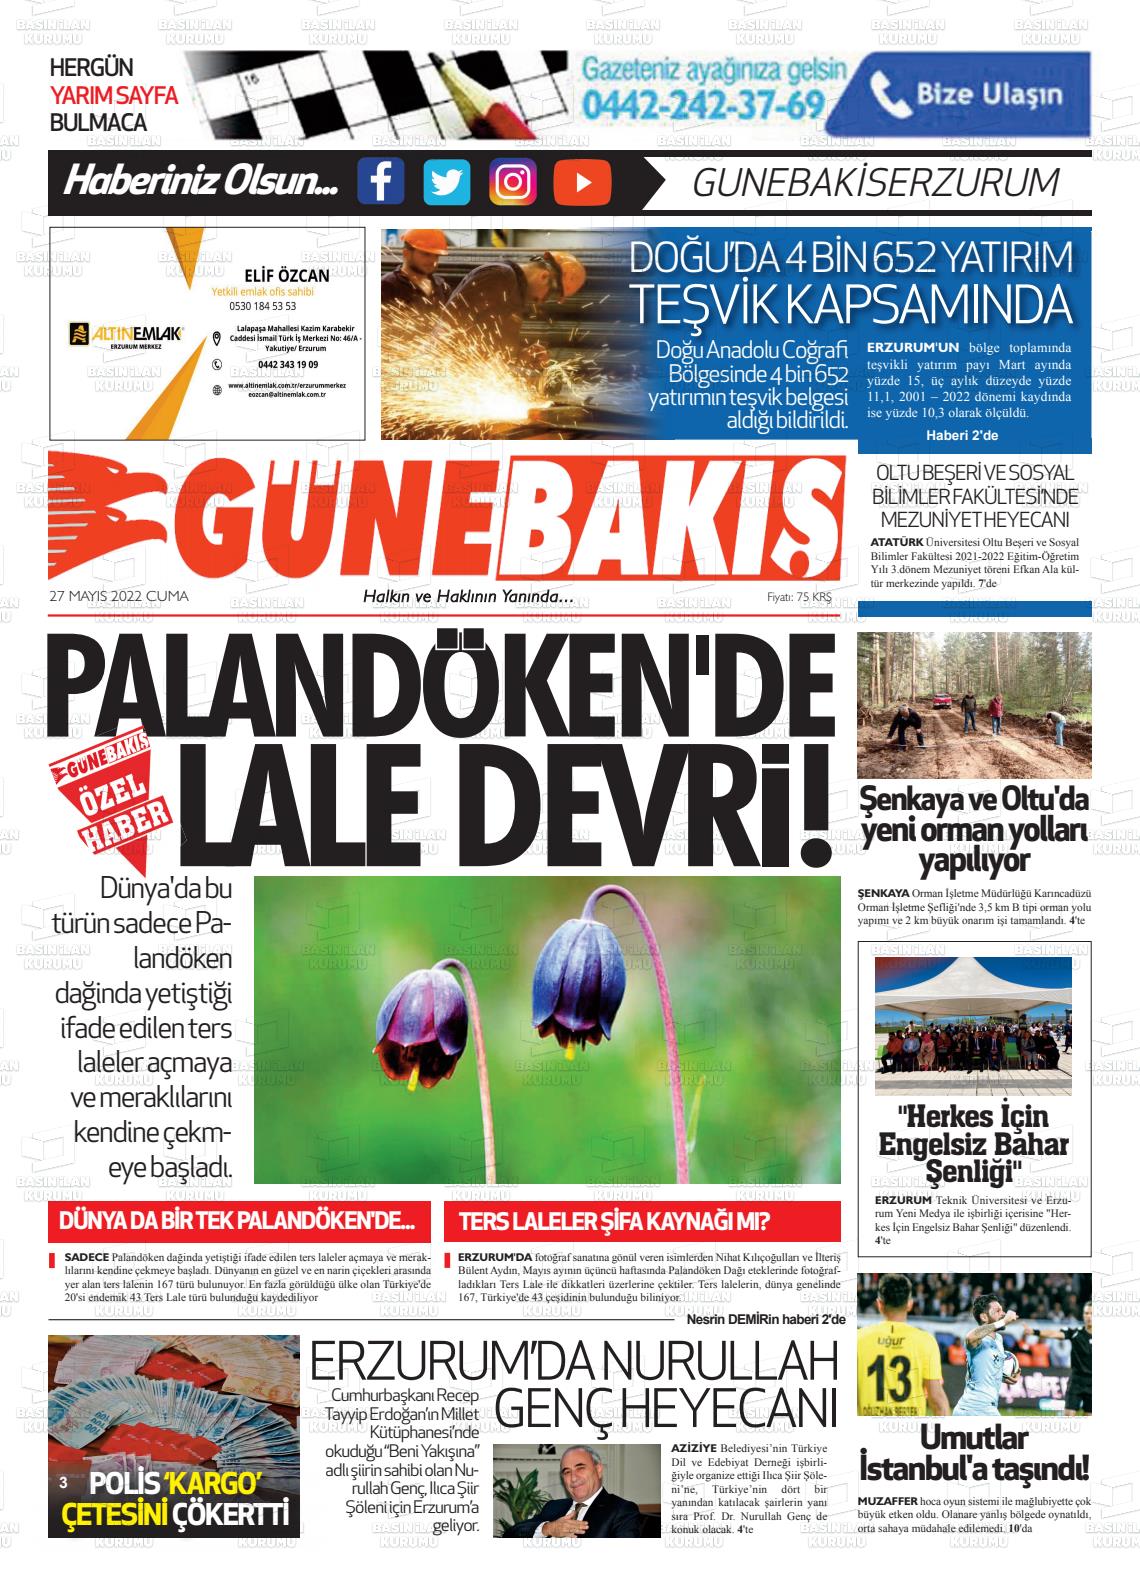 27 Mayıs 2022 Erzurum Günebakış Gazete Manşeti